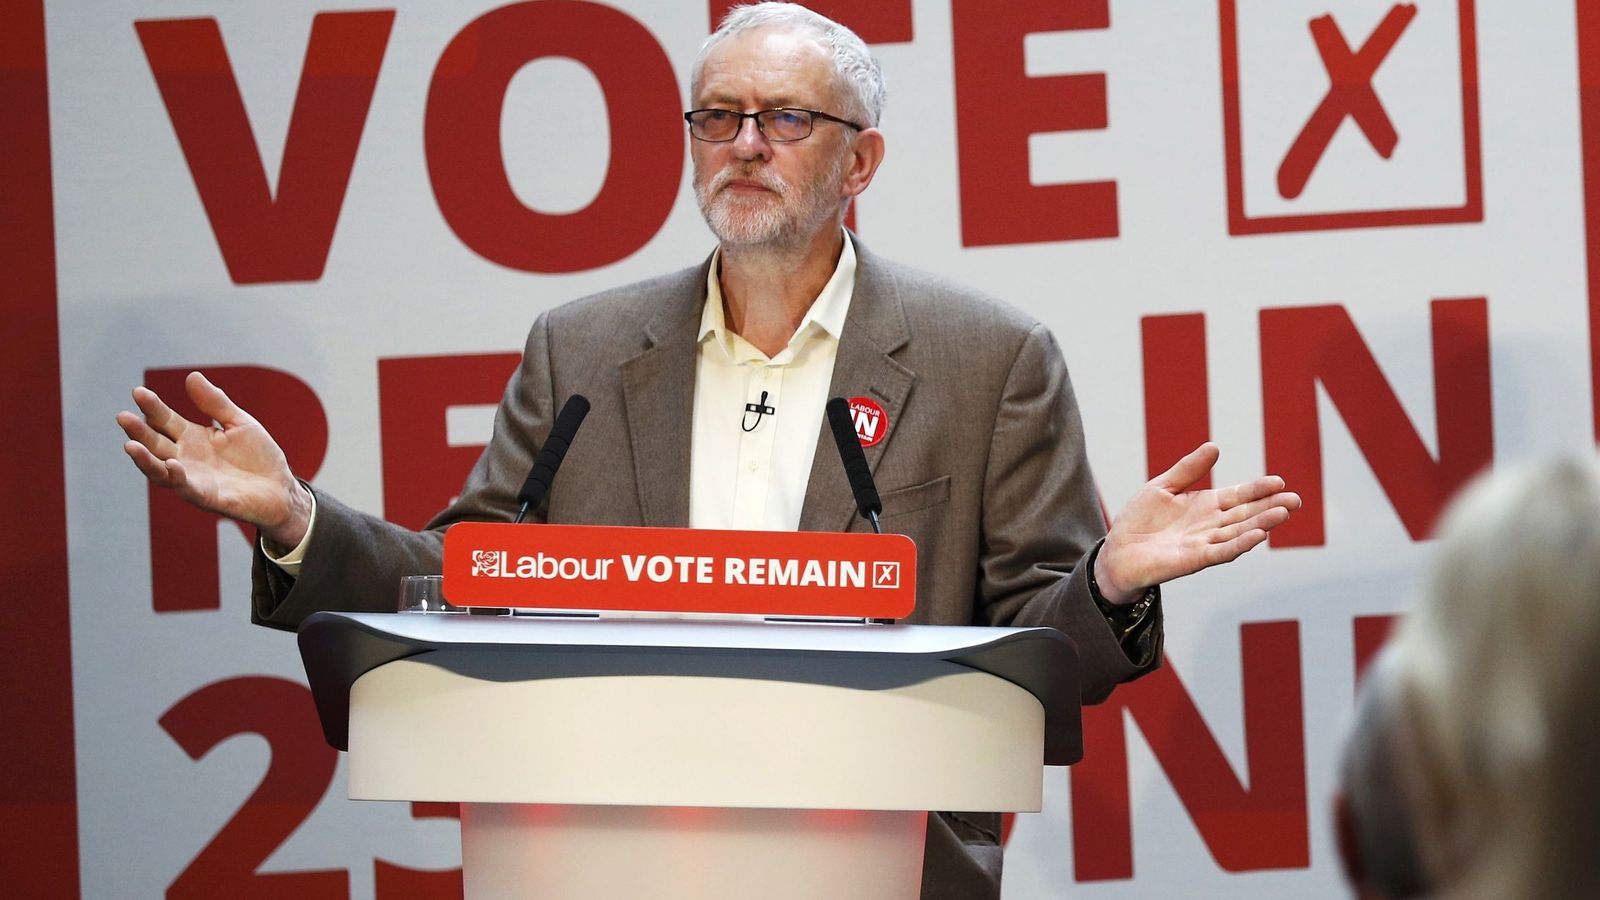 Foto: Jeremy Corbyn, el líder laborista, hace campaña por la permanencia. (Reuters)